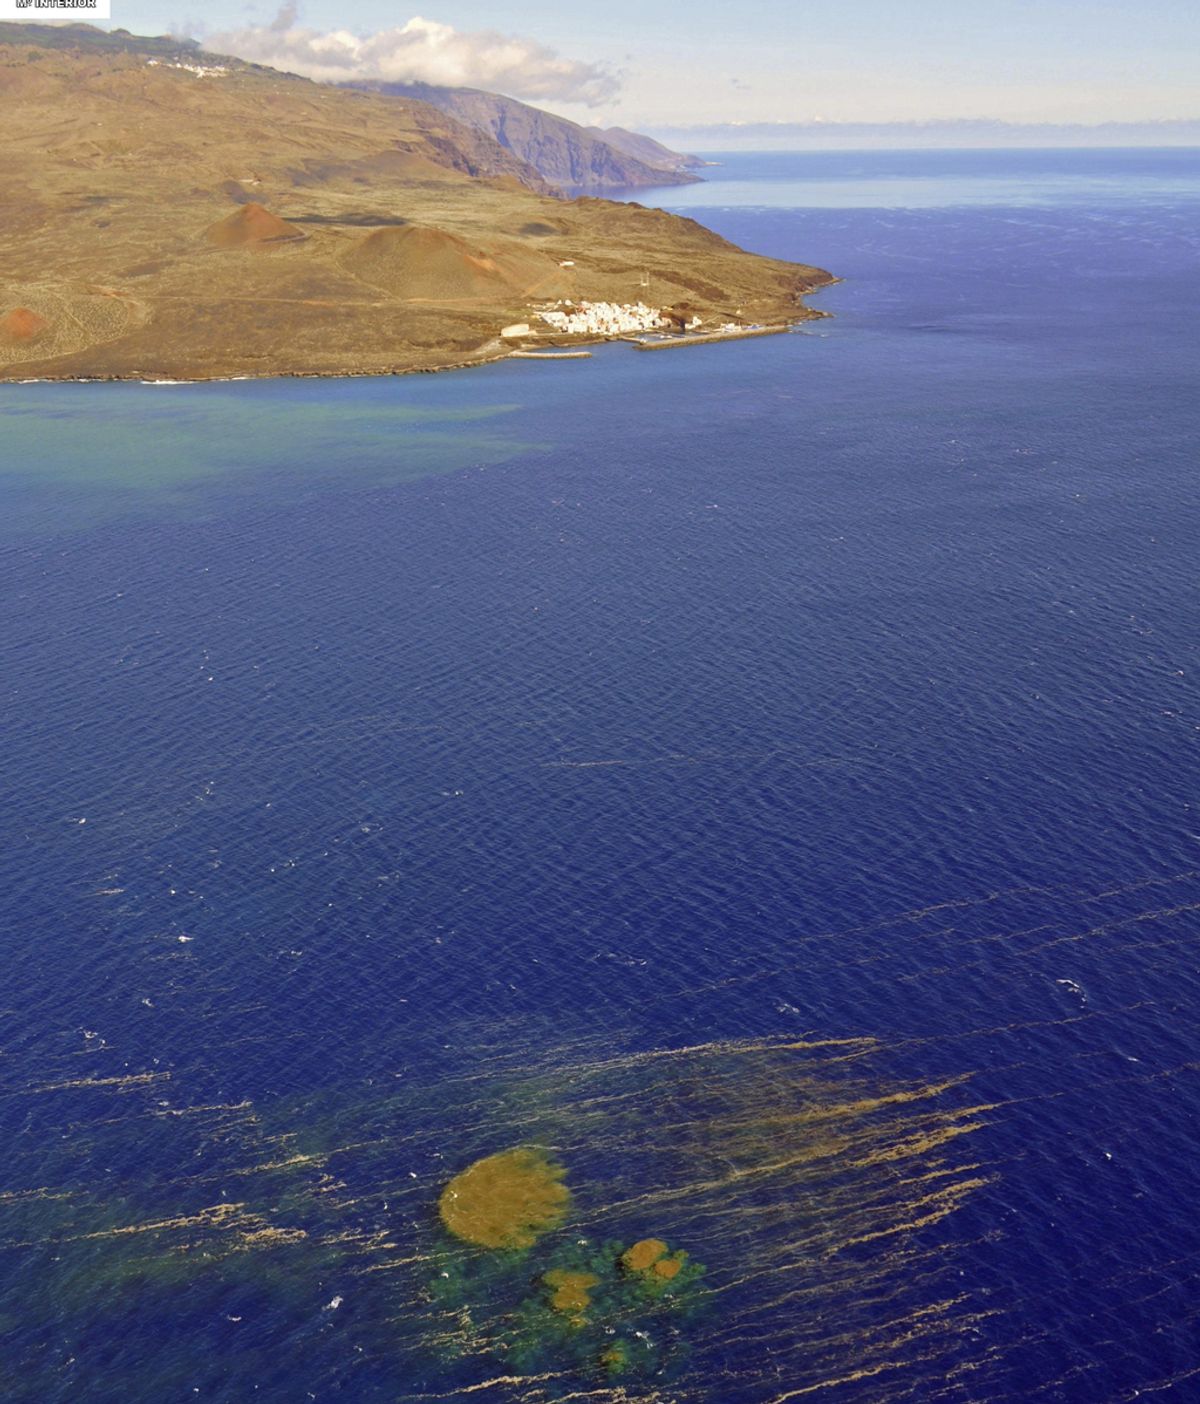 Fotografías facilitadas por la Guadia Civil del aspecto que mostraban las manchas en el mar producto de los materiales expulsados tras la erupción submarina de la isla de El Hierro (Canarias)